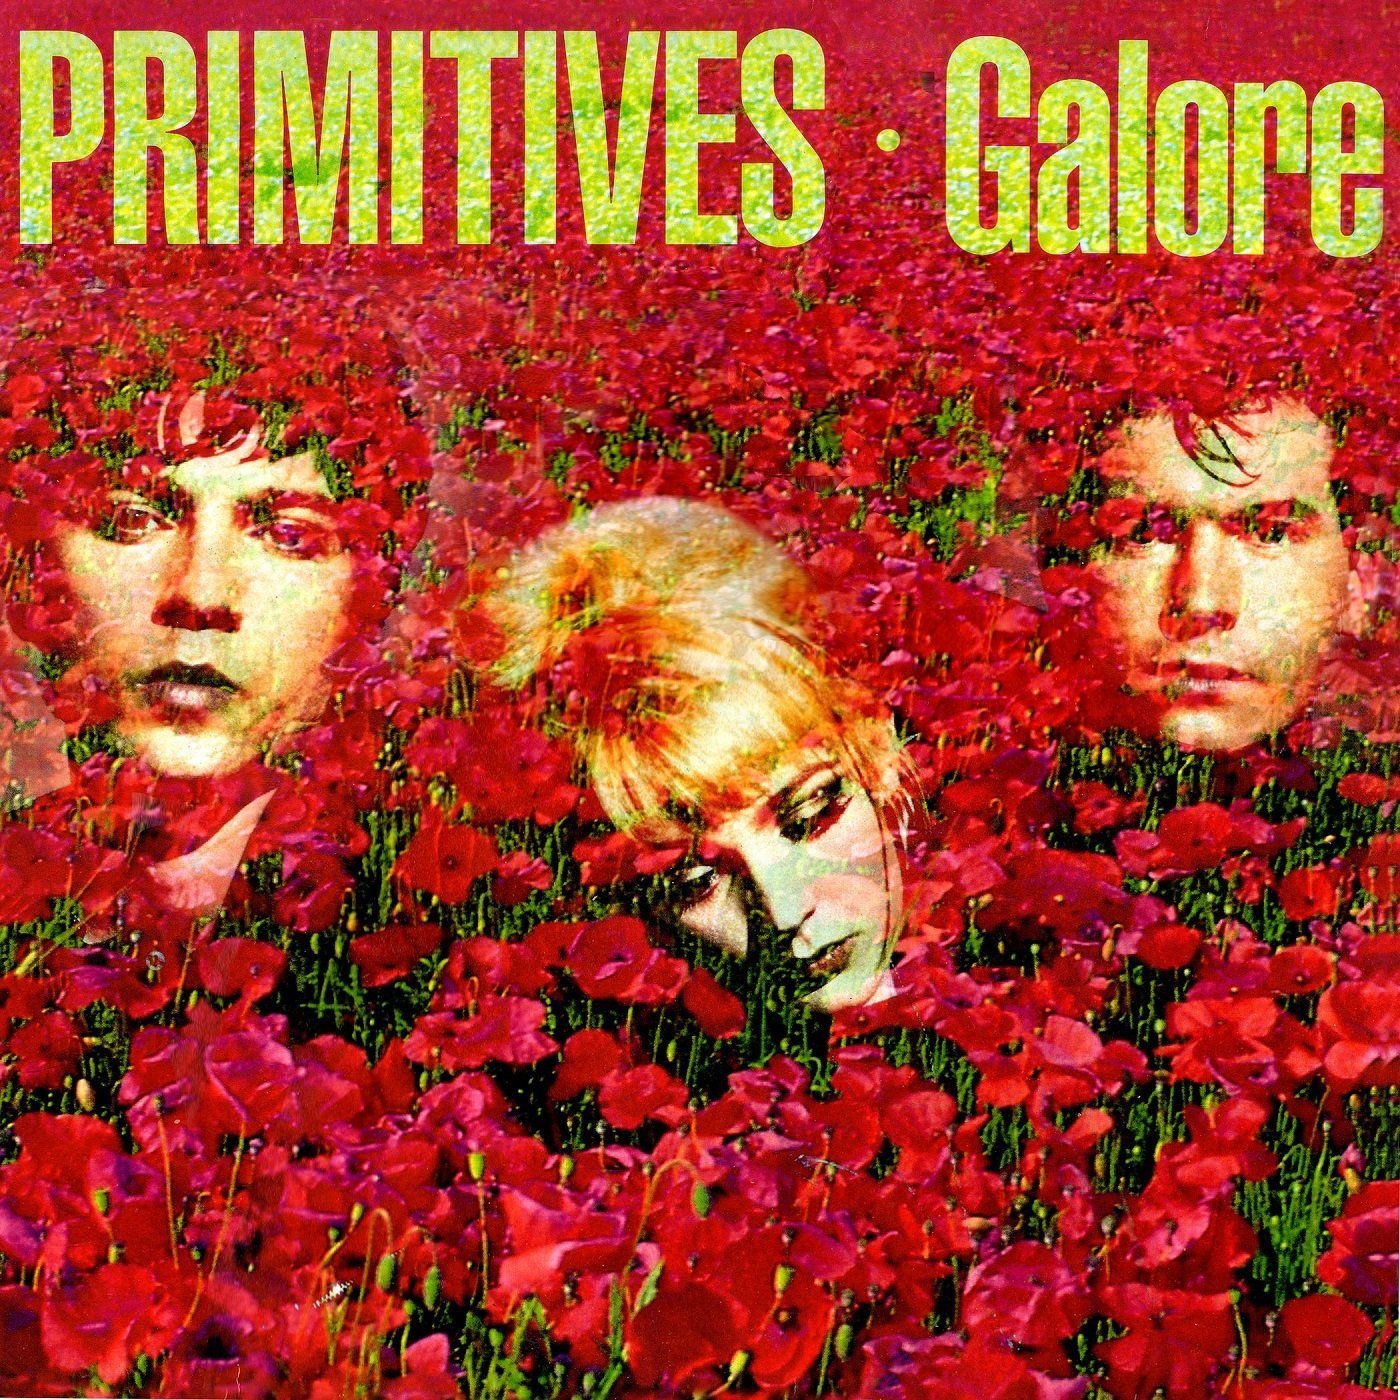 THE PRIMITIVES - GALORE Red Vinyl LP